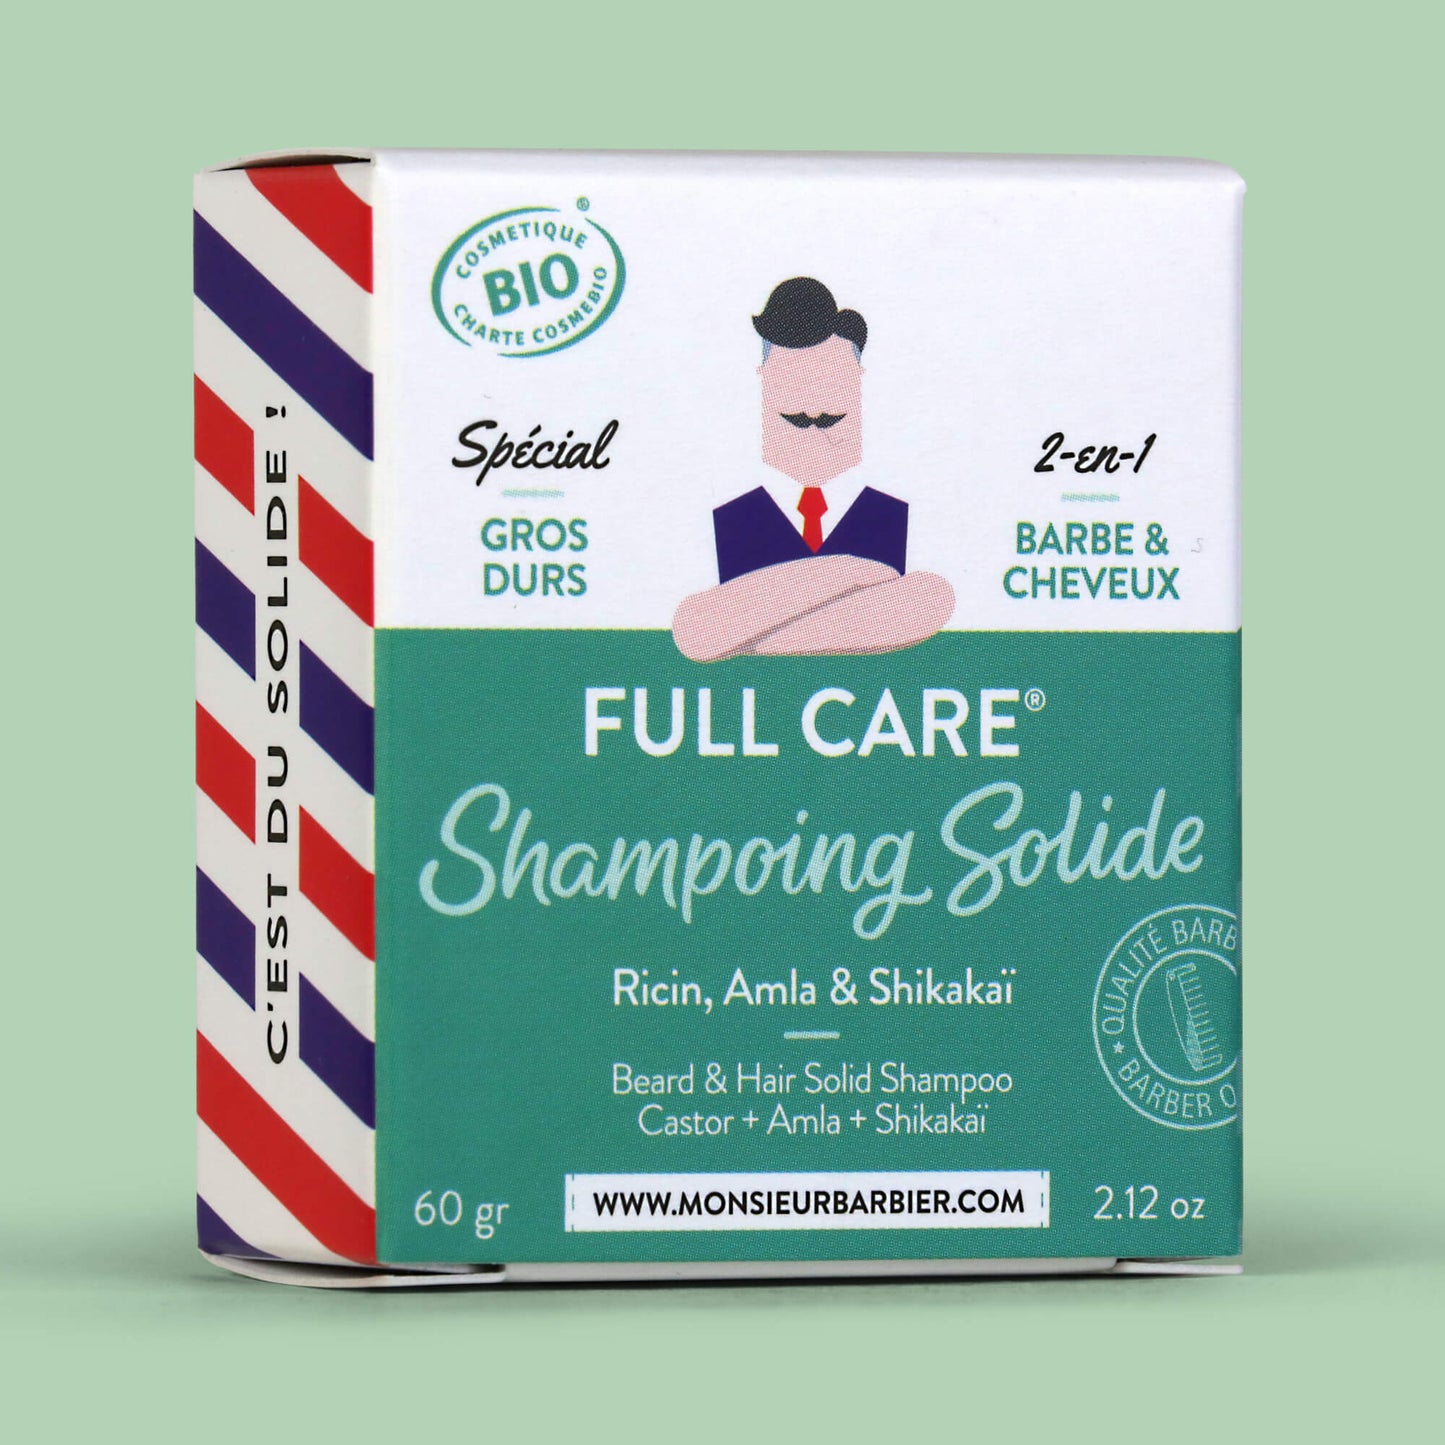 Shampoing Solide 2-en-1 pour Barbe et Cheveux de Monsieur BARBIER - packaging